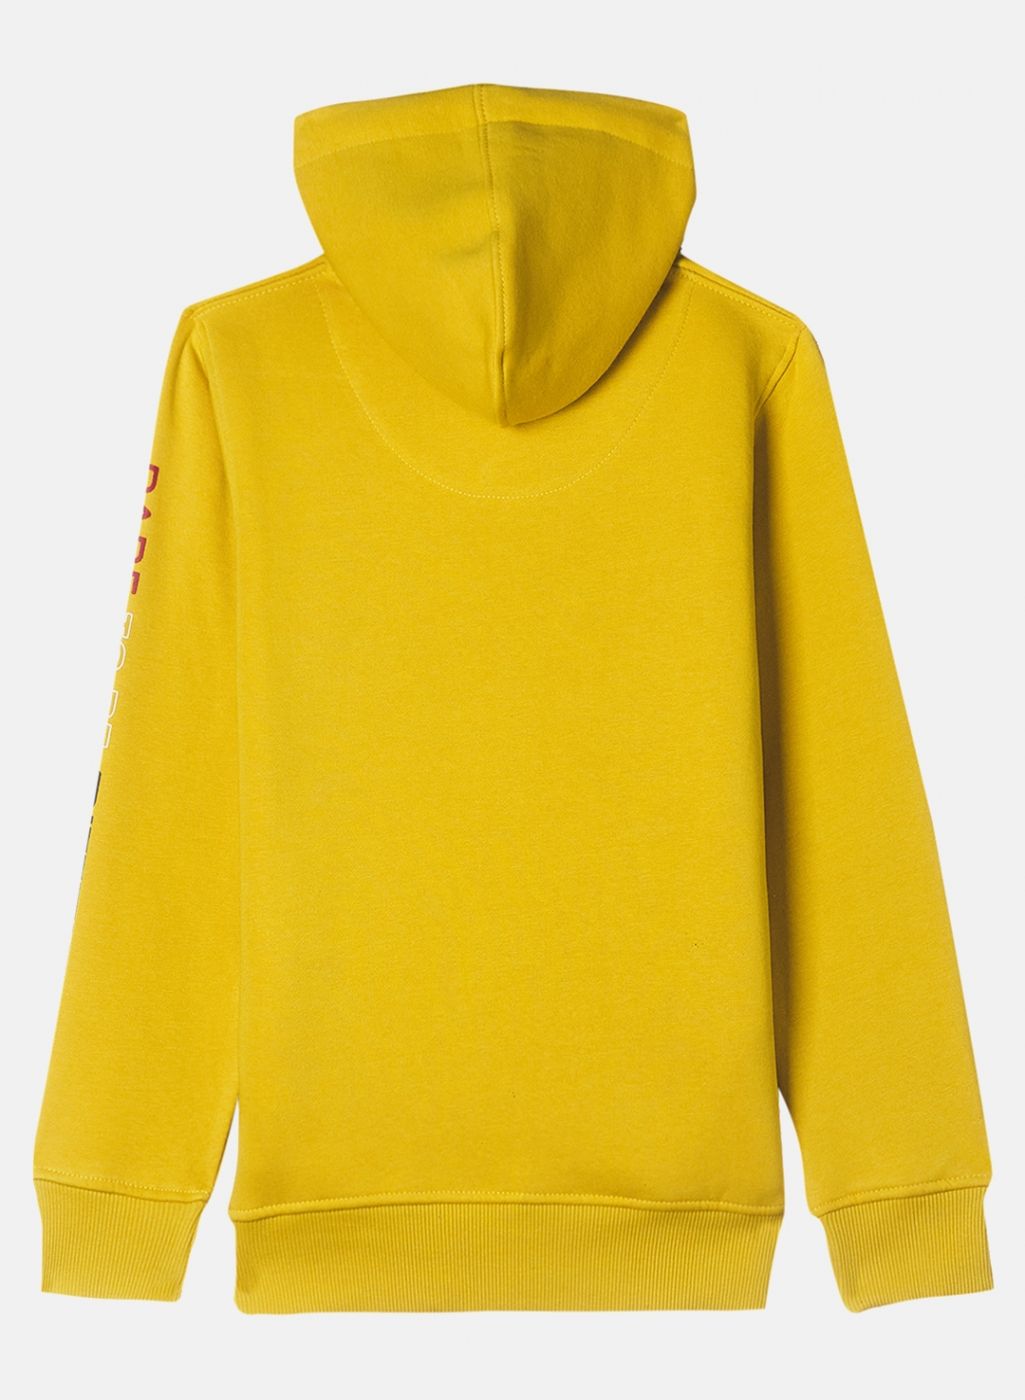 Boys Yellow Printed Sweatshirt